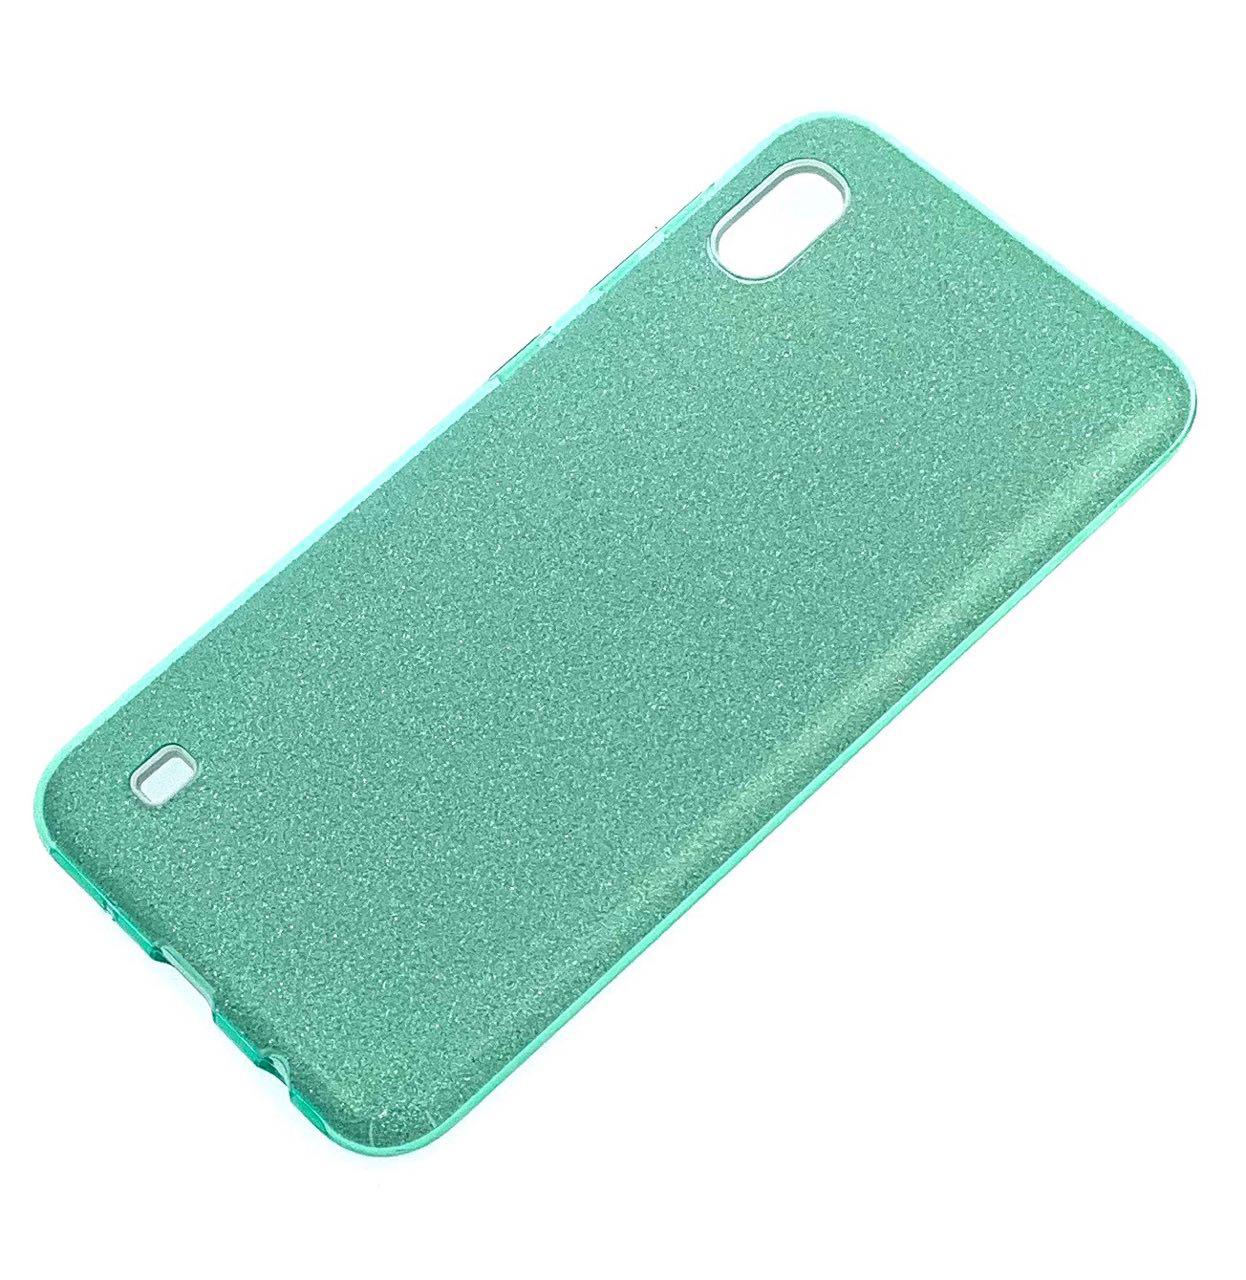 Чехол накладка Shine для SAMSUNG A10 (SM-A105), силикон, блестки, цвет зеленый.